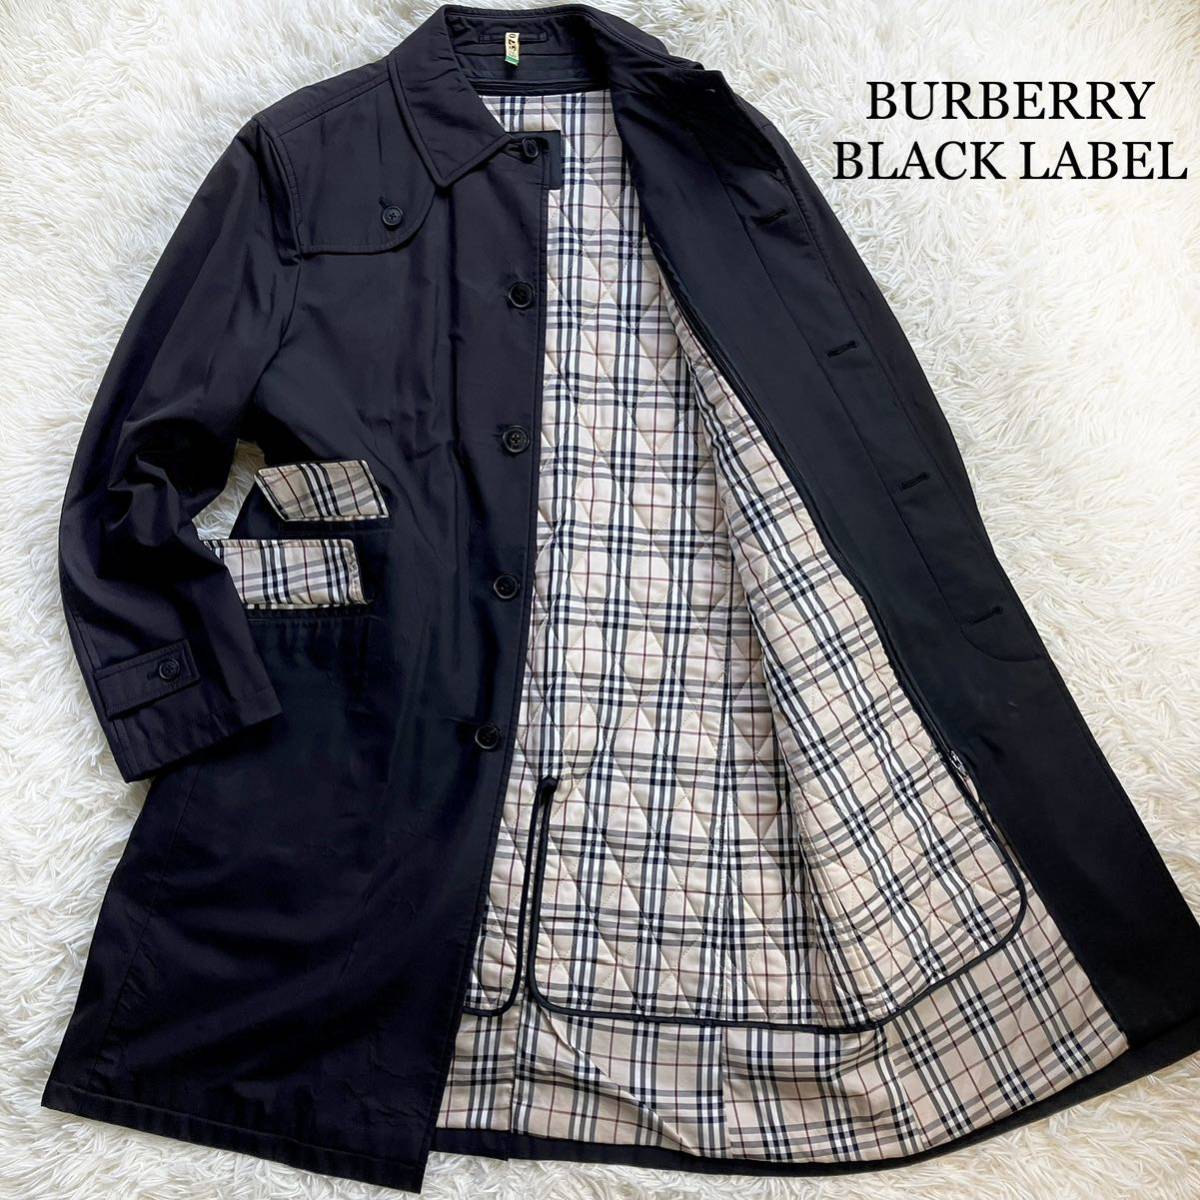 BURBERRY BLACK LABEL バーバリーブラックレーベル ステンカラーコート ロング ライナー ノバチェック L キルティング 2way 日本製 黒